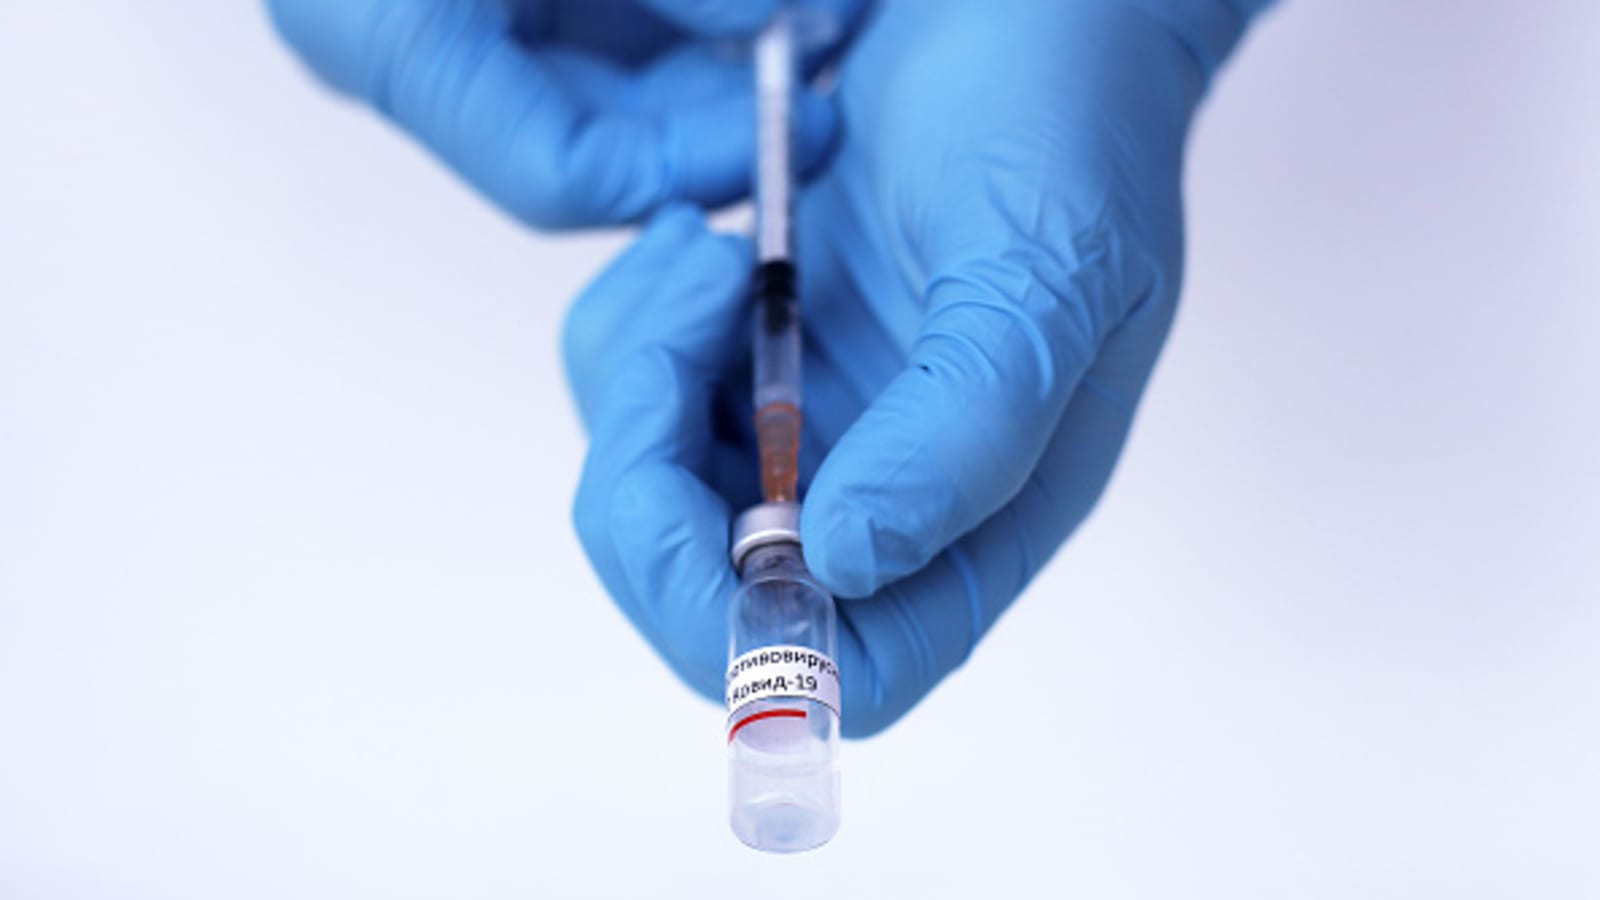 Brésil : Suspension des essais cliniques d’un vaccin anti-coronavirus chinois après un incident jugé grave